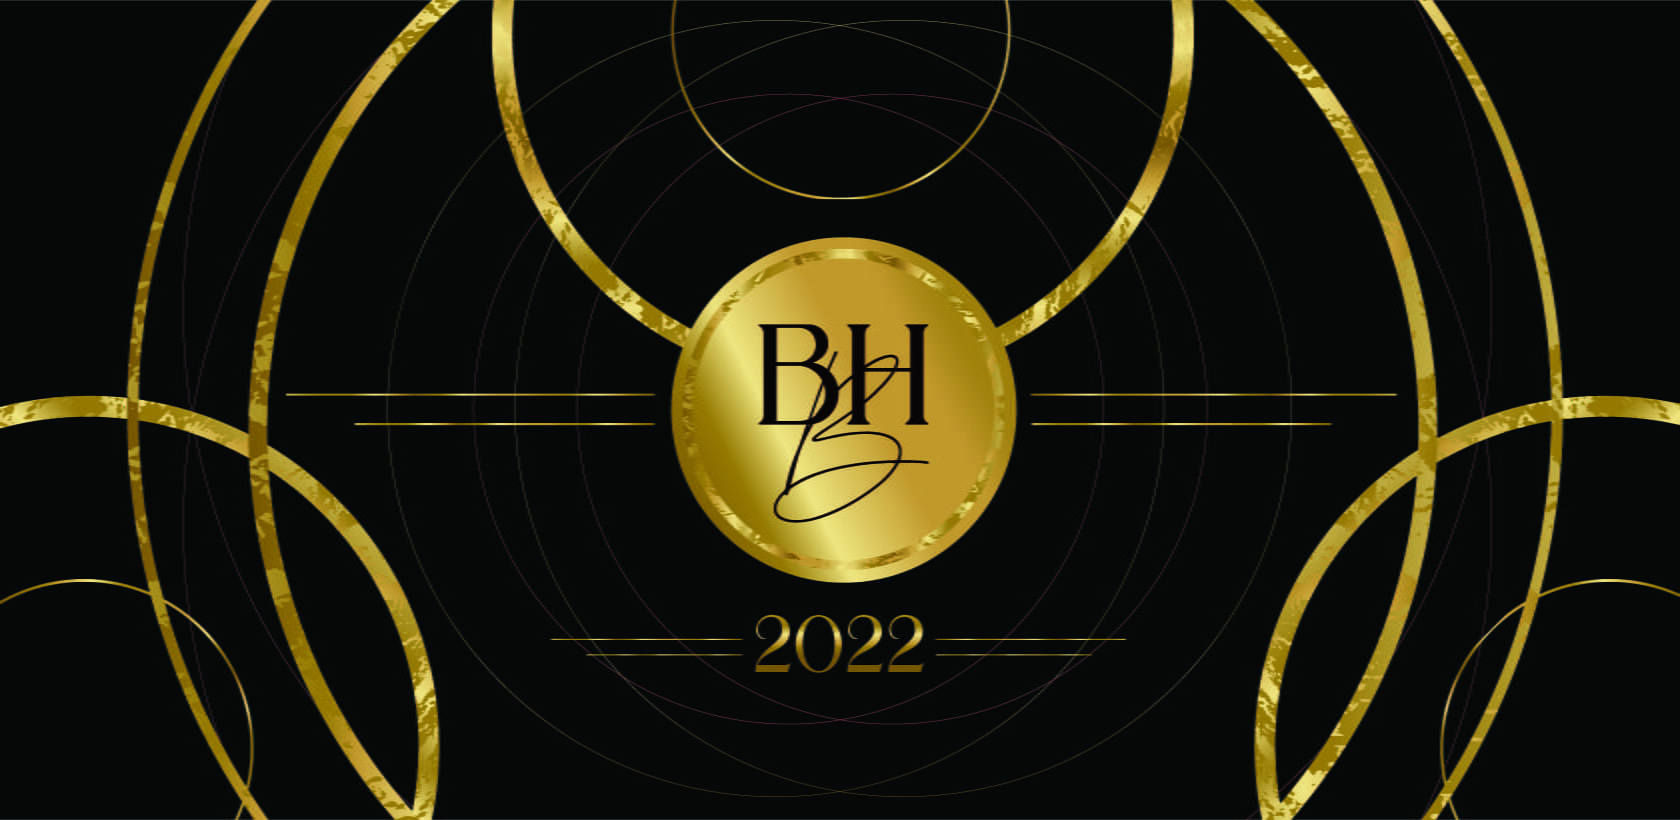 BH Ball Desktop Banner